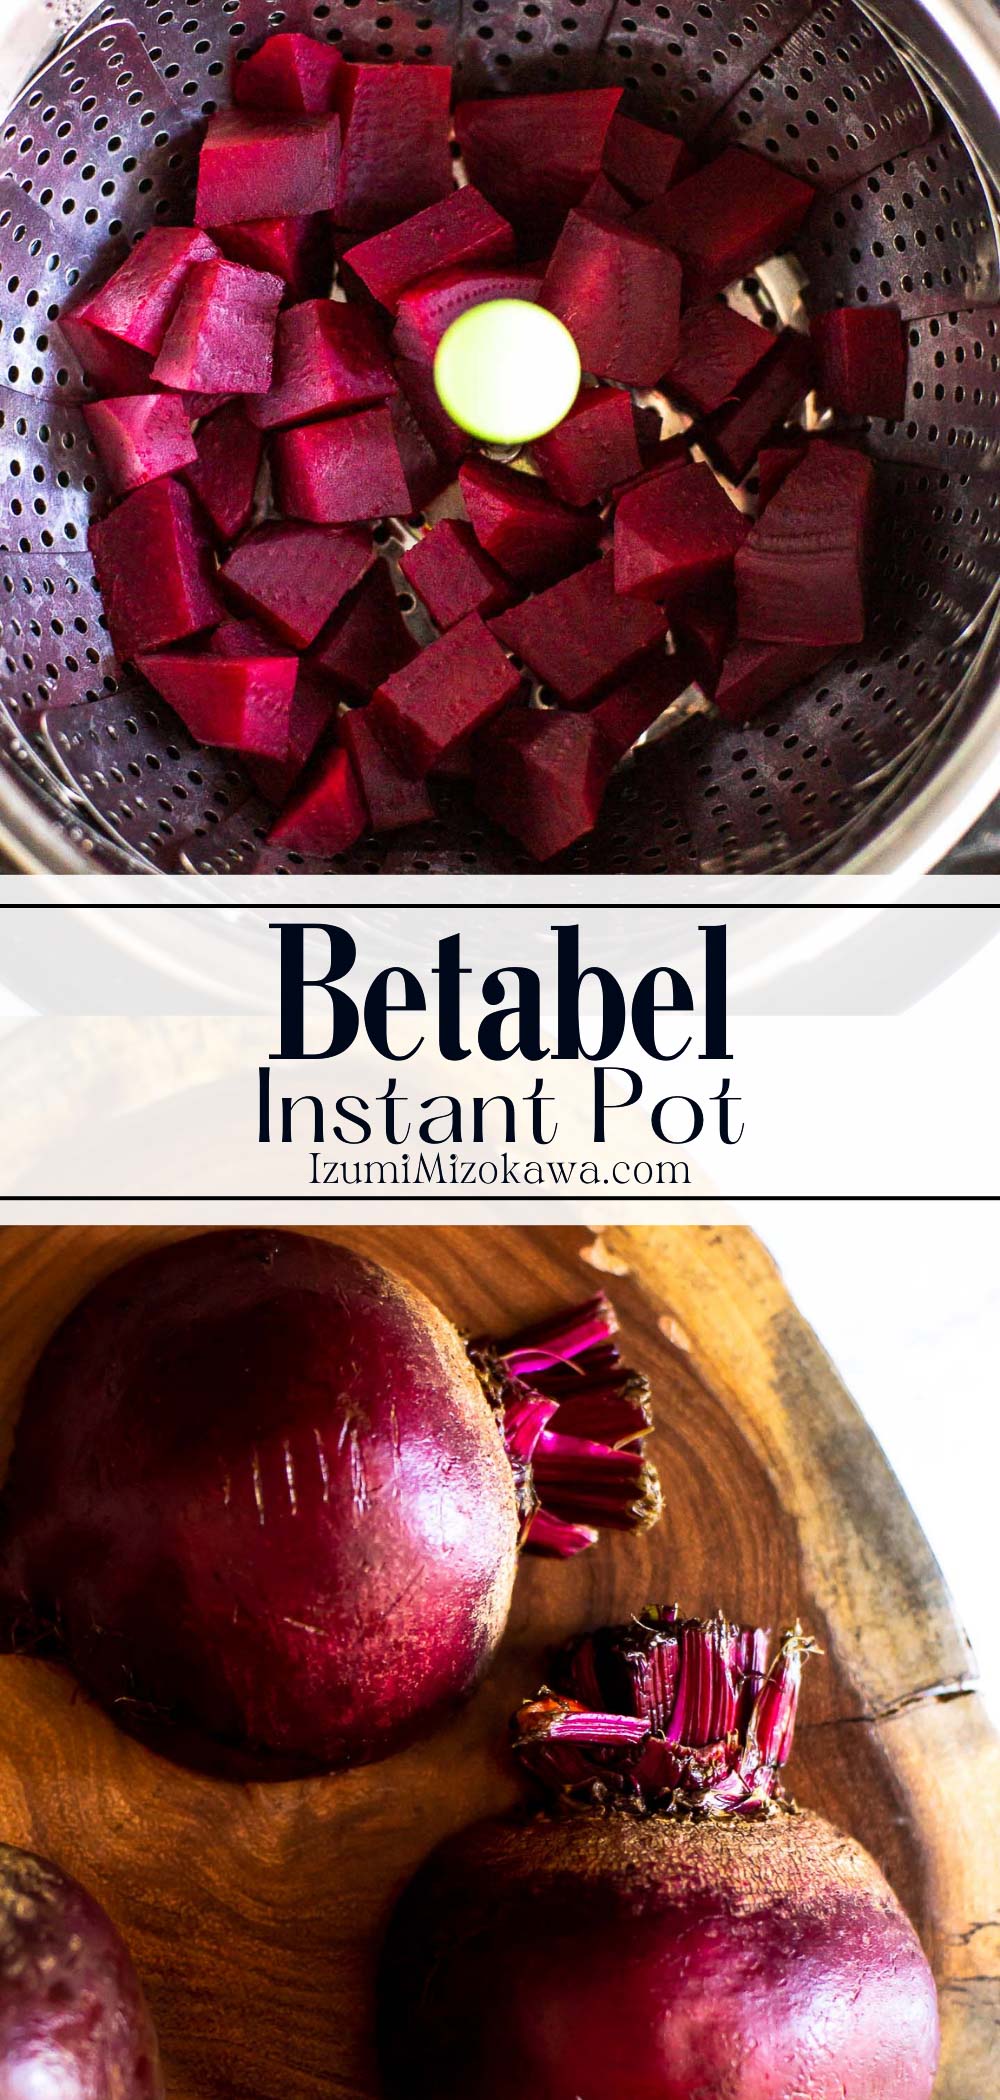 Cómo Cocinar Betabel en Instant Pot (Pinterest)